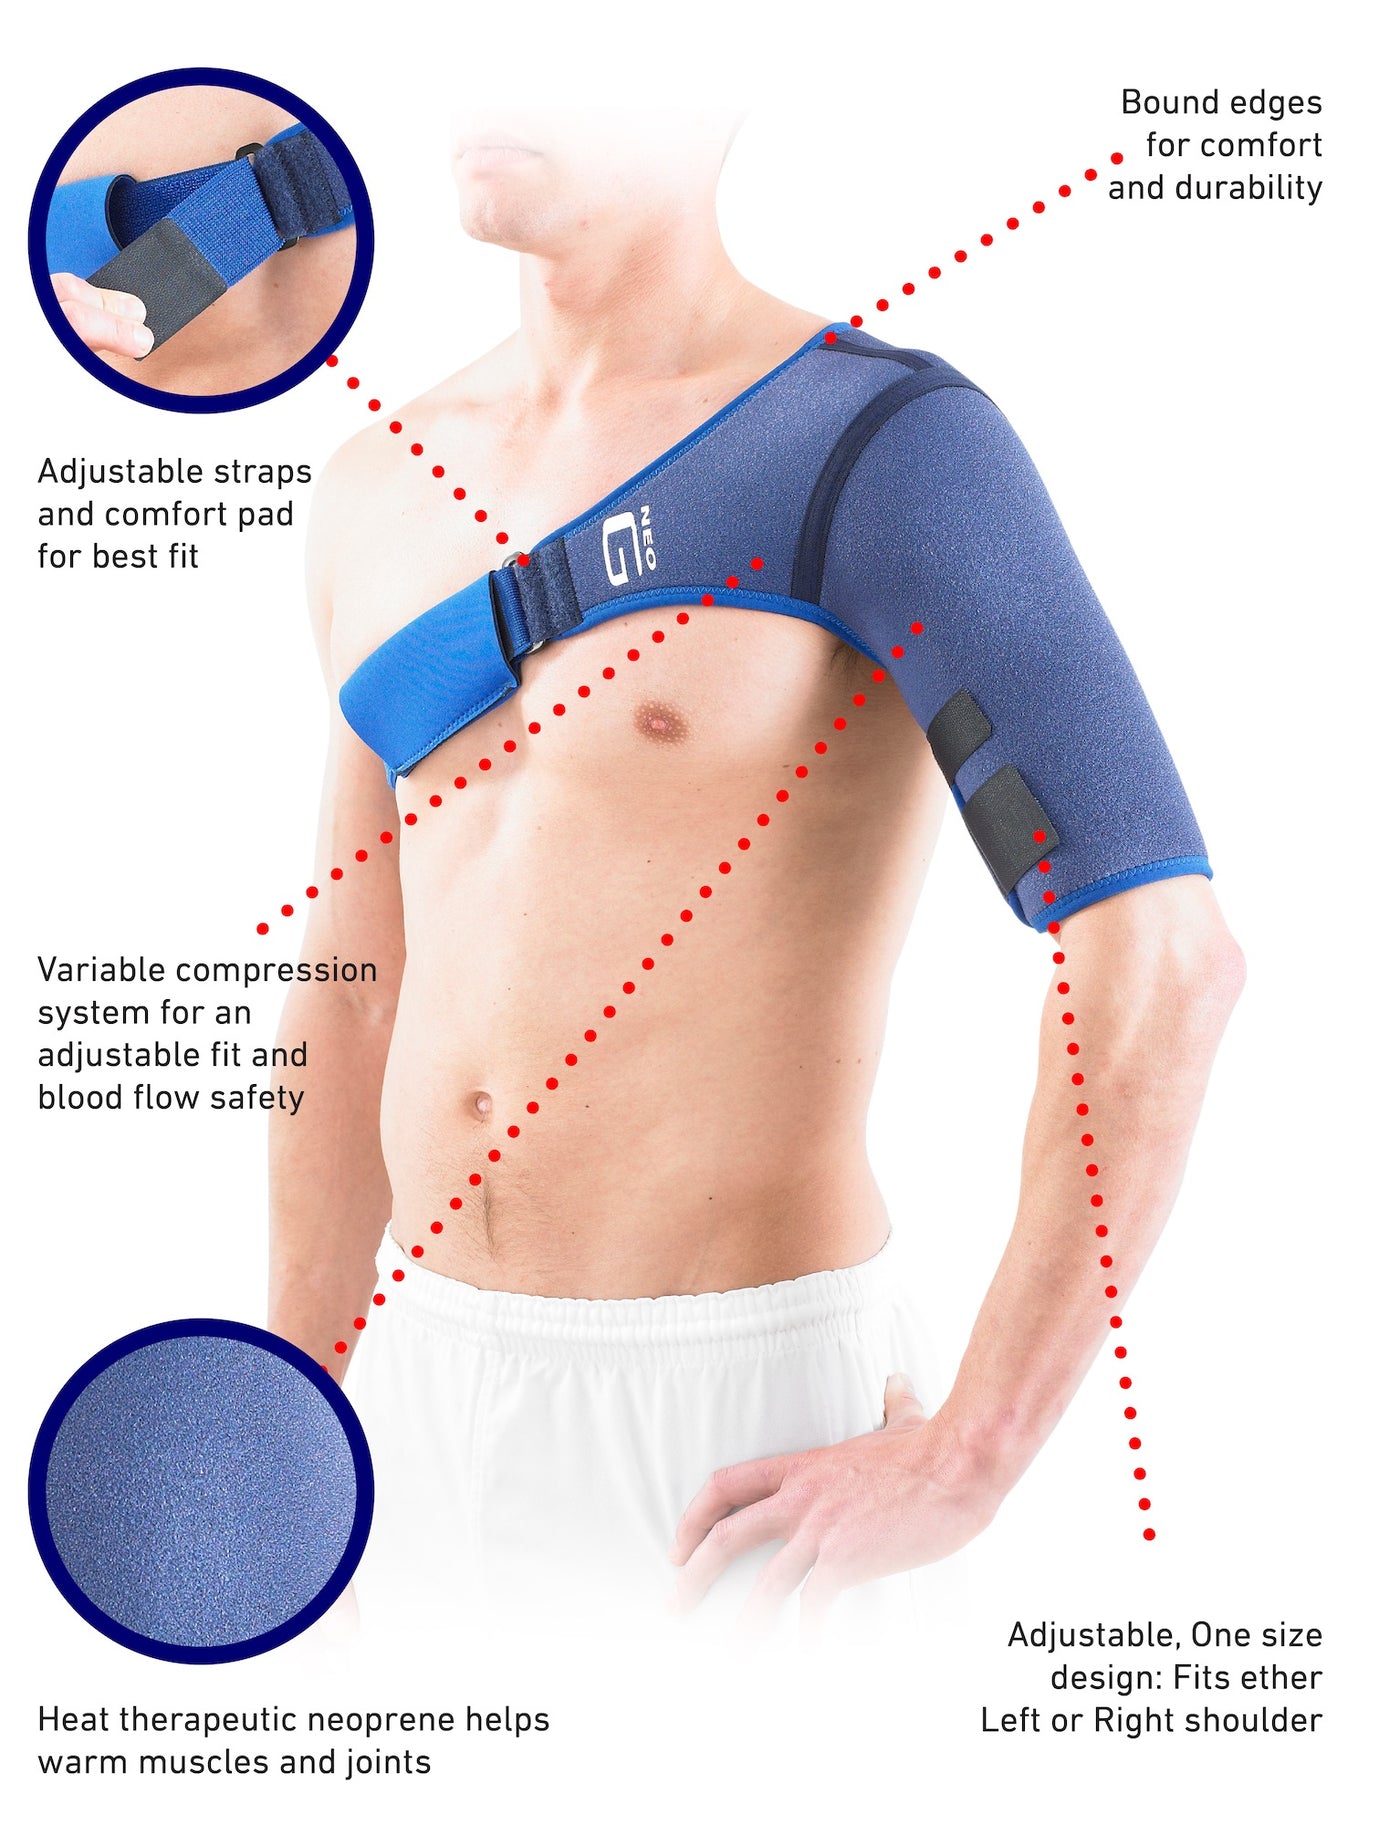 Men's Shoulder Support Brace Right Shoulder Breathable Adjustable